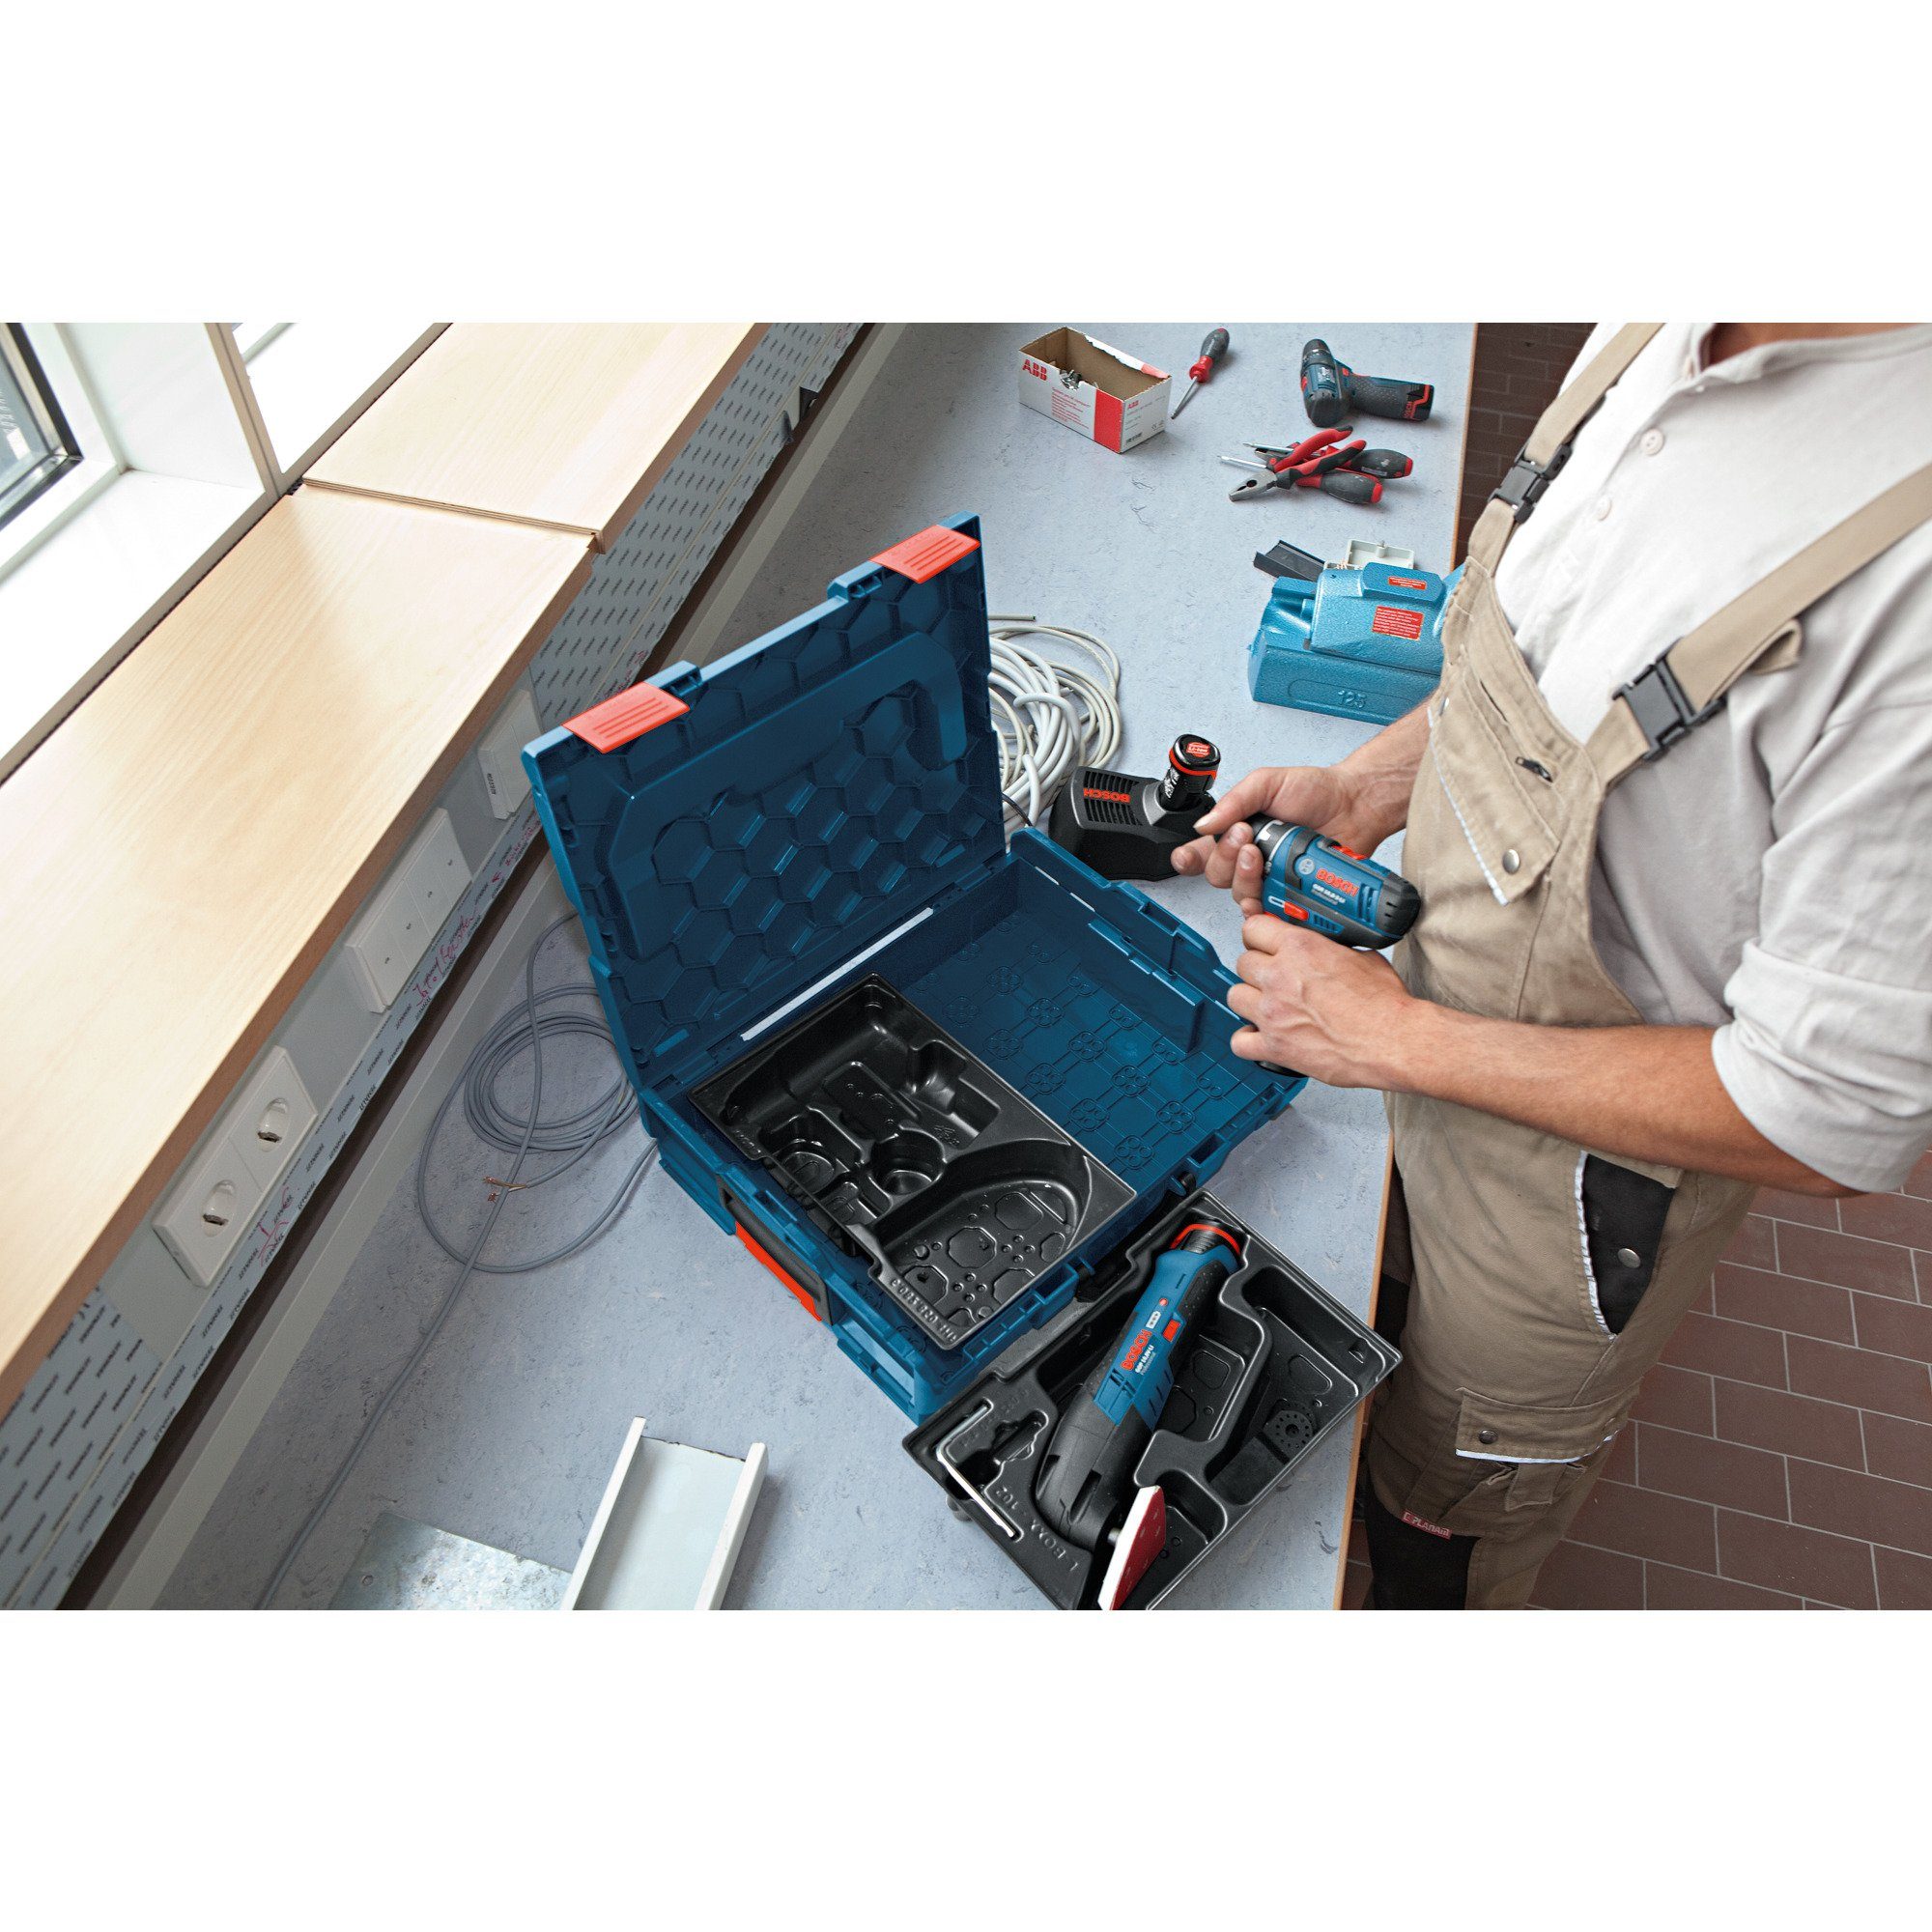 BOSCH Werkzeugbox Professional Einlage für 4-32 L-Boxx Bosch GBH